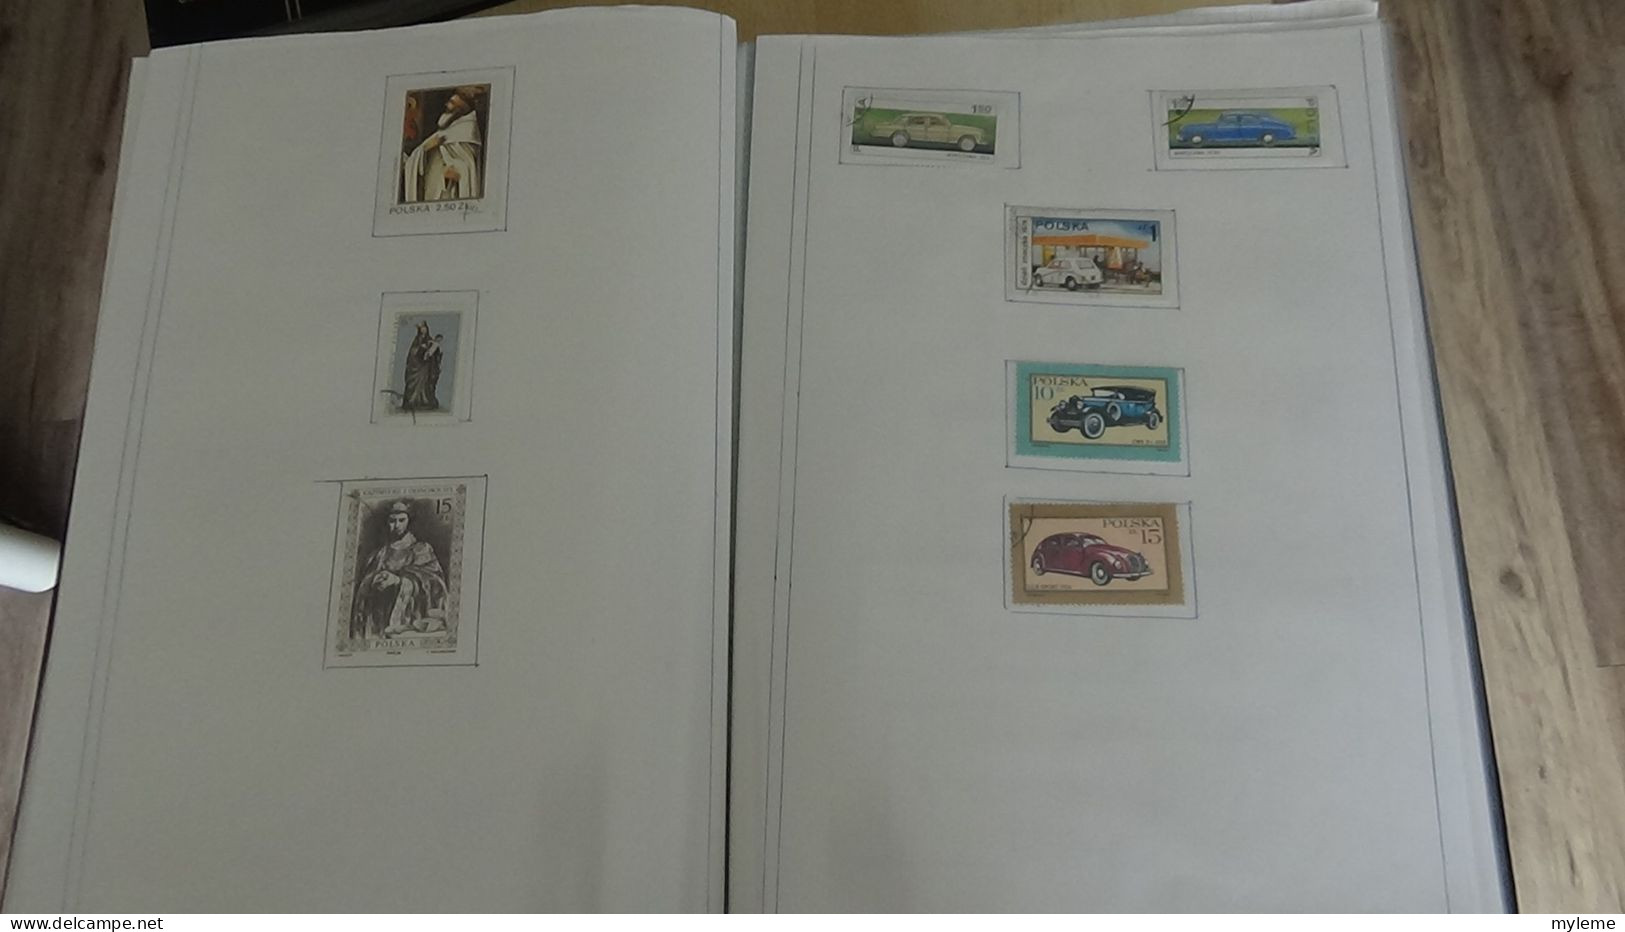 BF51 Bel ensemble de timbres oblitérés de divers pays + plaquette de timbres **. A saisir !!!